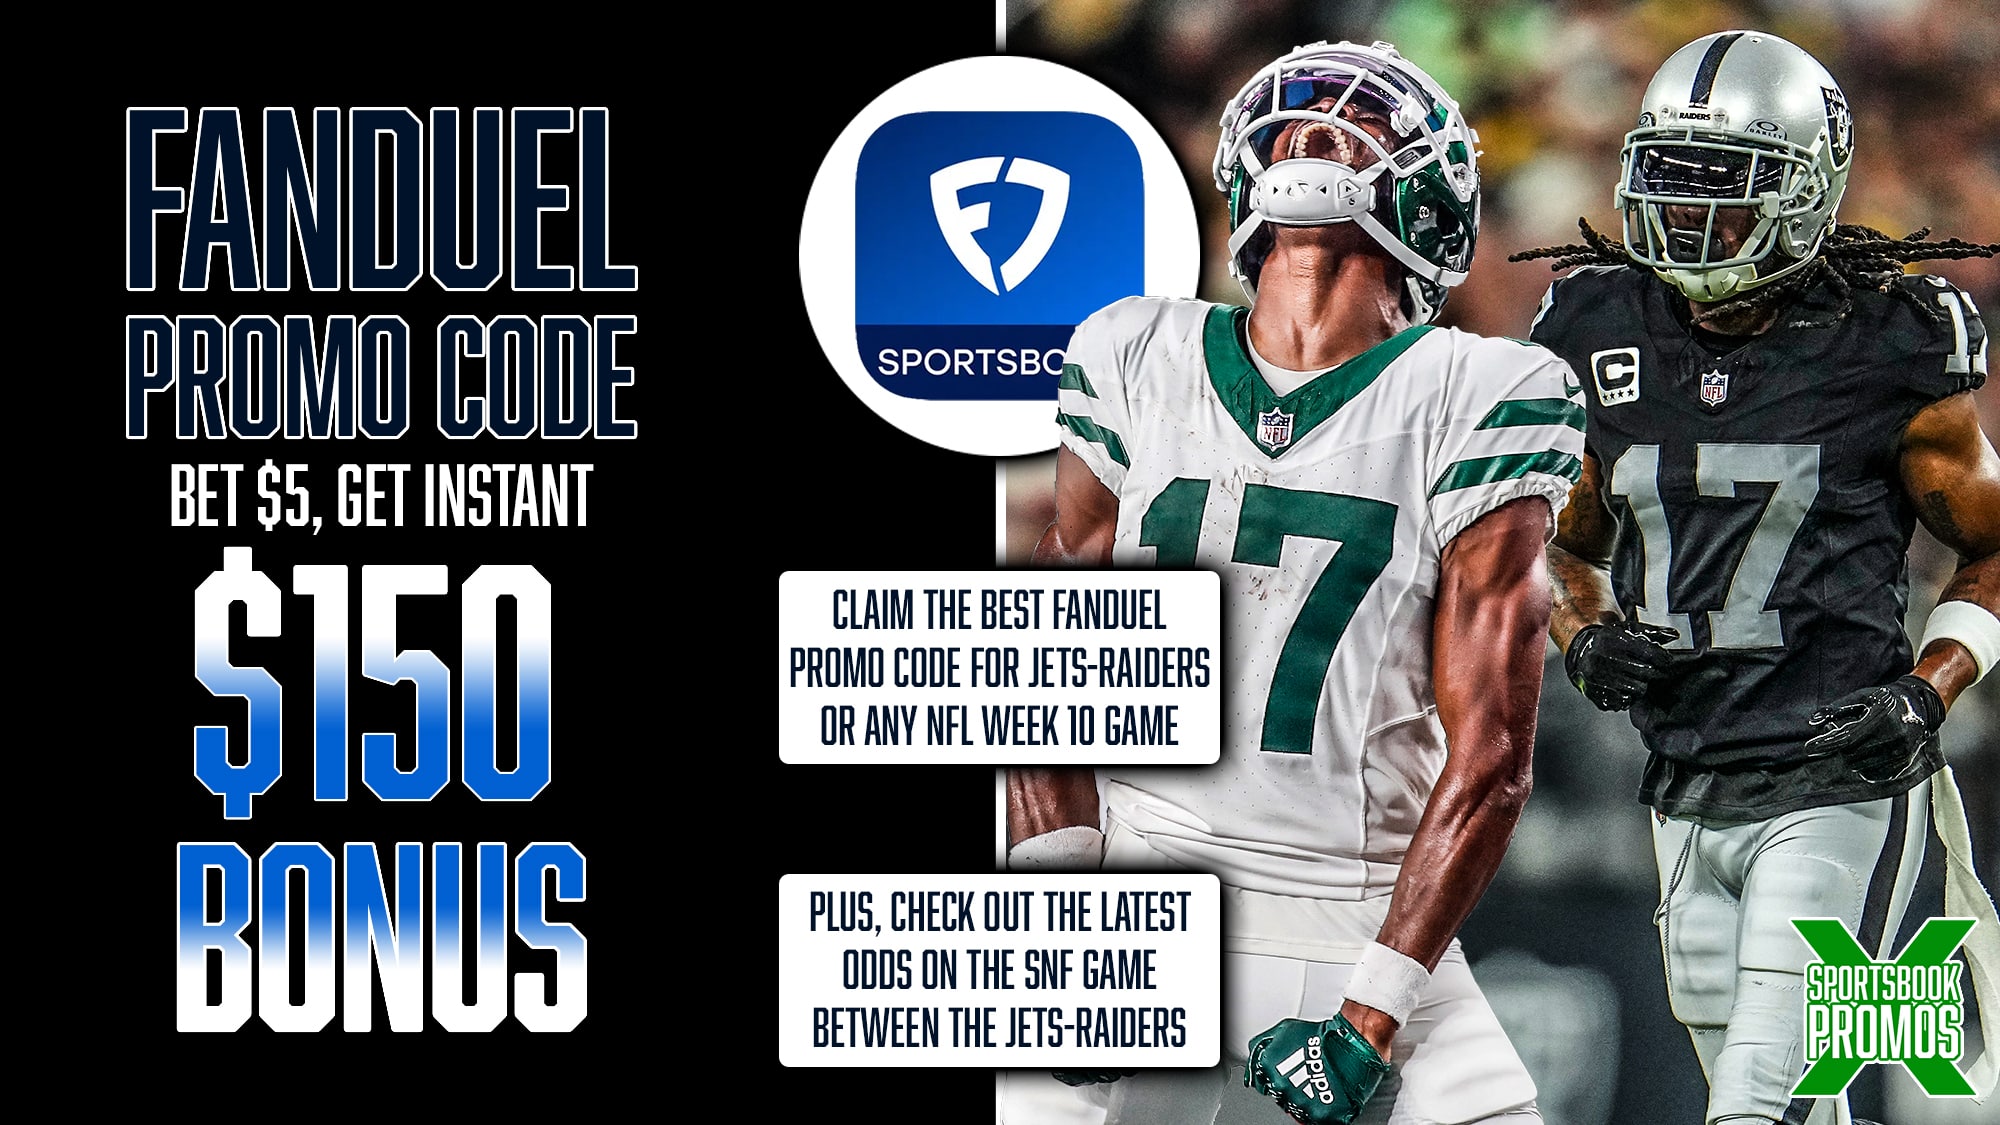 FanDuel Promo Code, Get $150 Sportsbook Bonus, NFL Week 10, Jets-Raiders